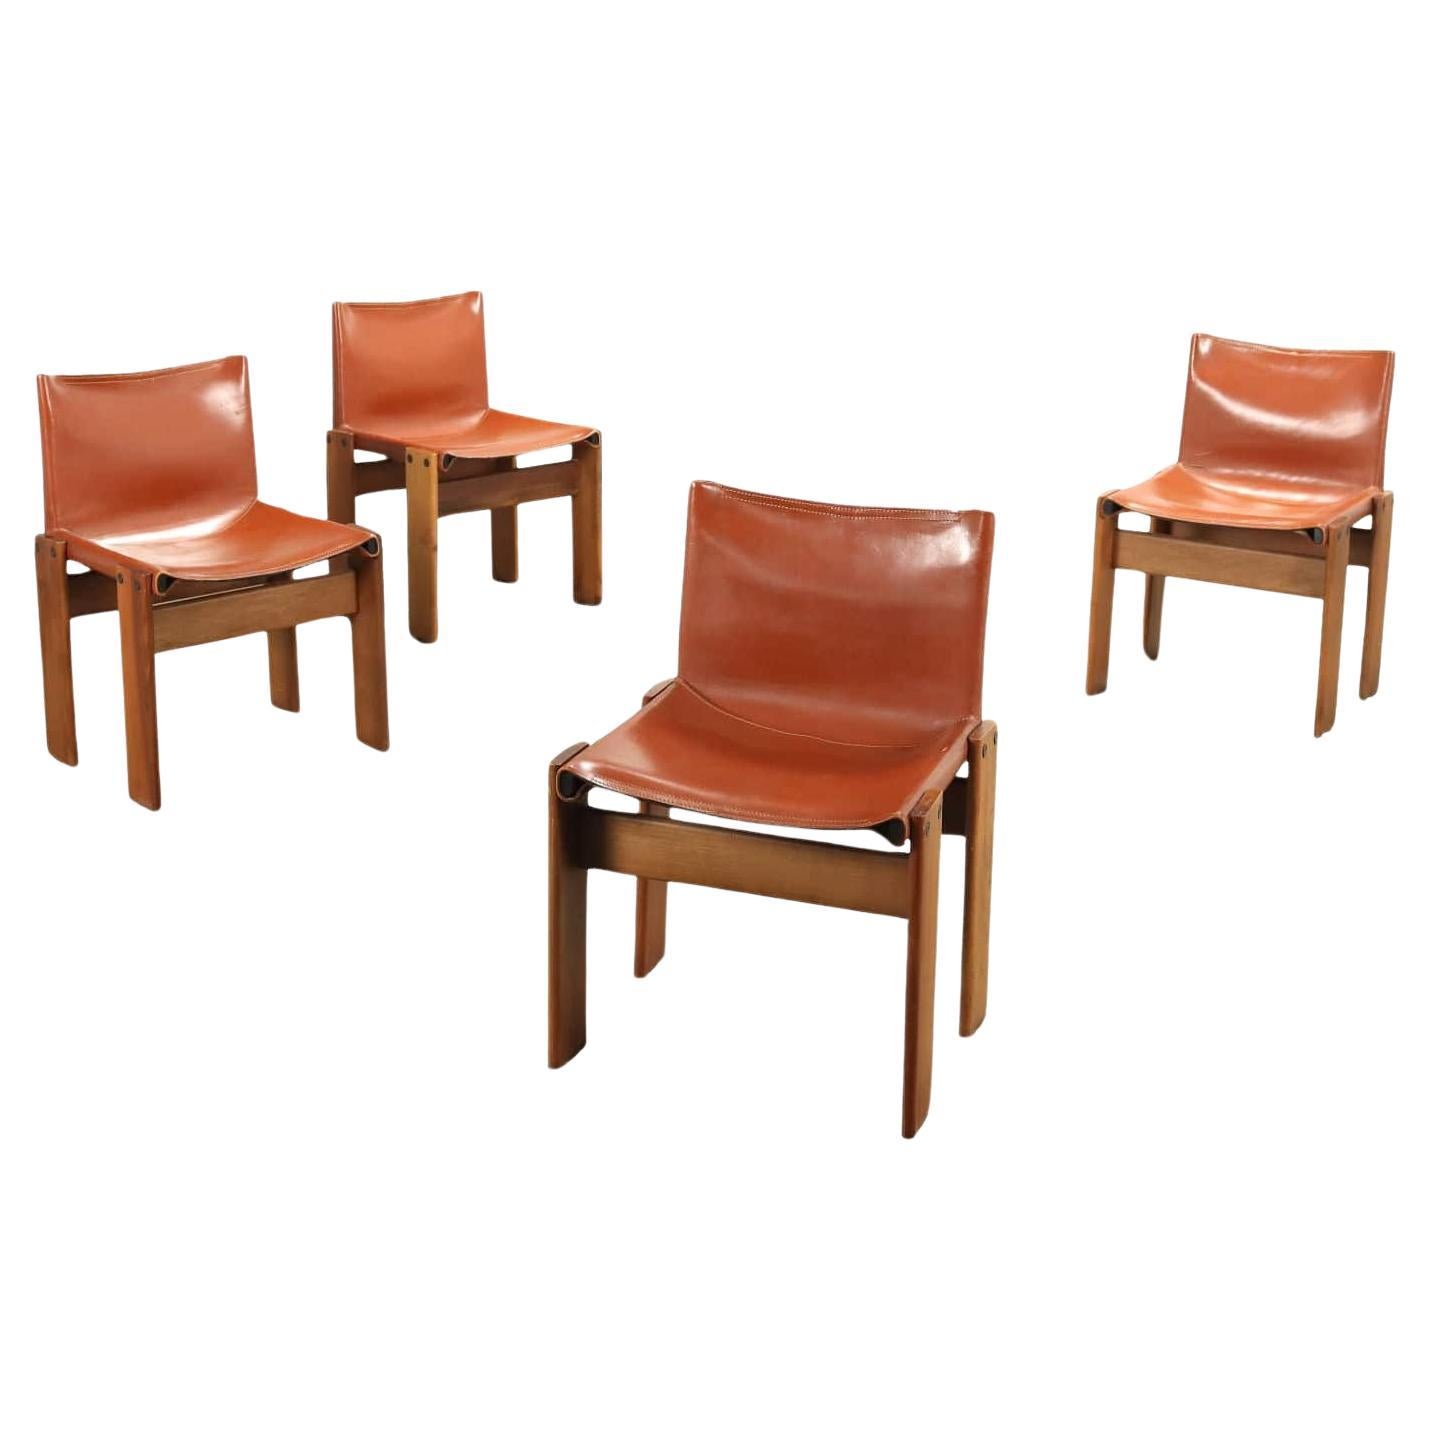 Satz  vier 'Monk'-Stühle Afra und Tobia Scarpa für Molteni 1970er Jahre